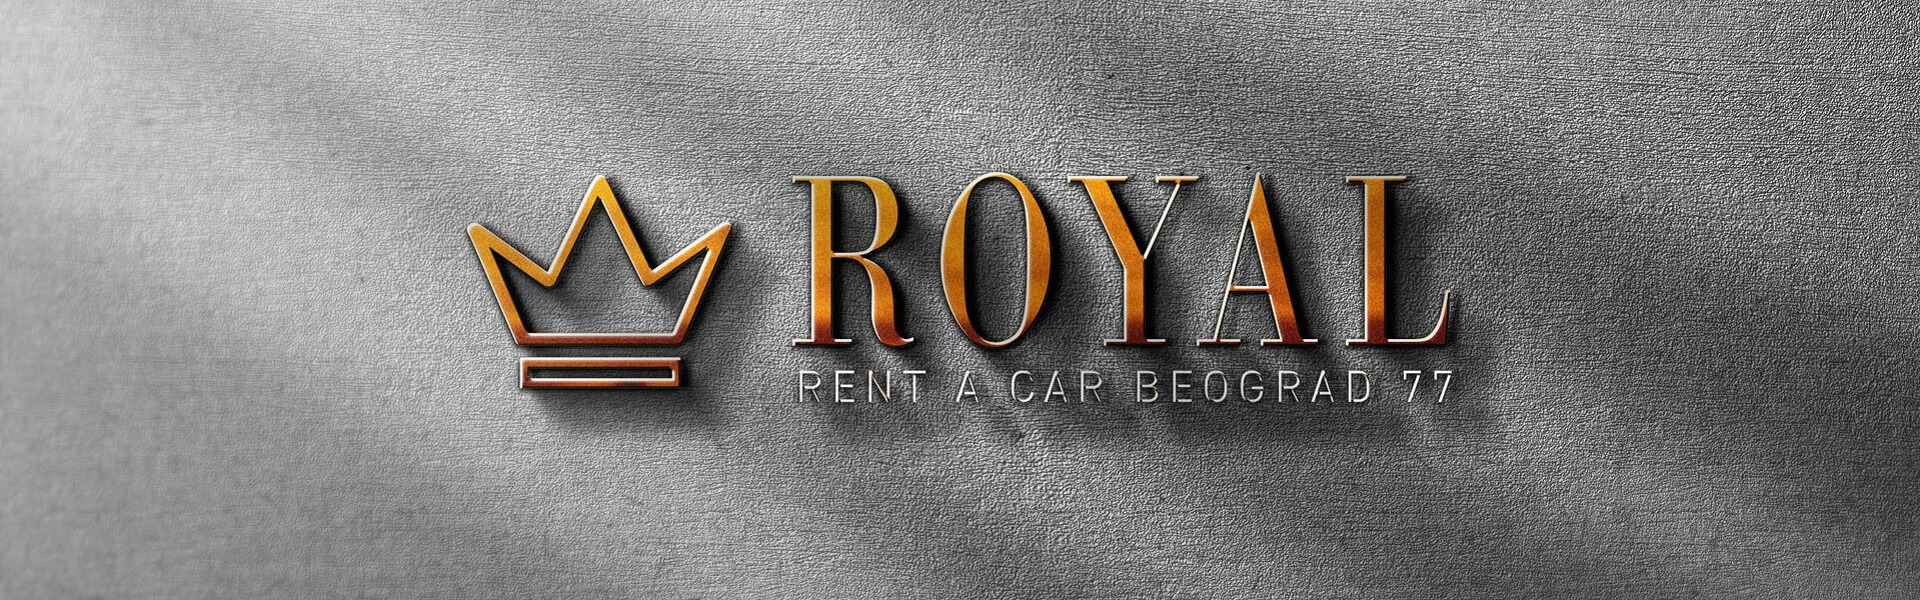 Rent a car Crna Gora | Car rental Beograd Royal